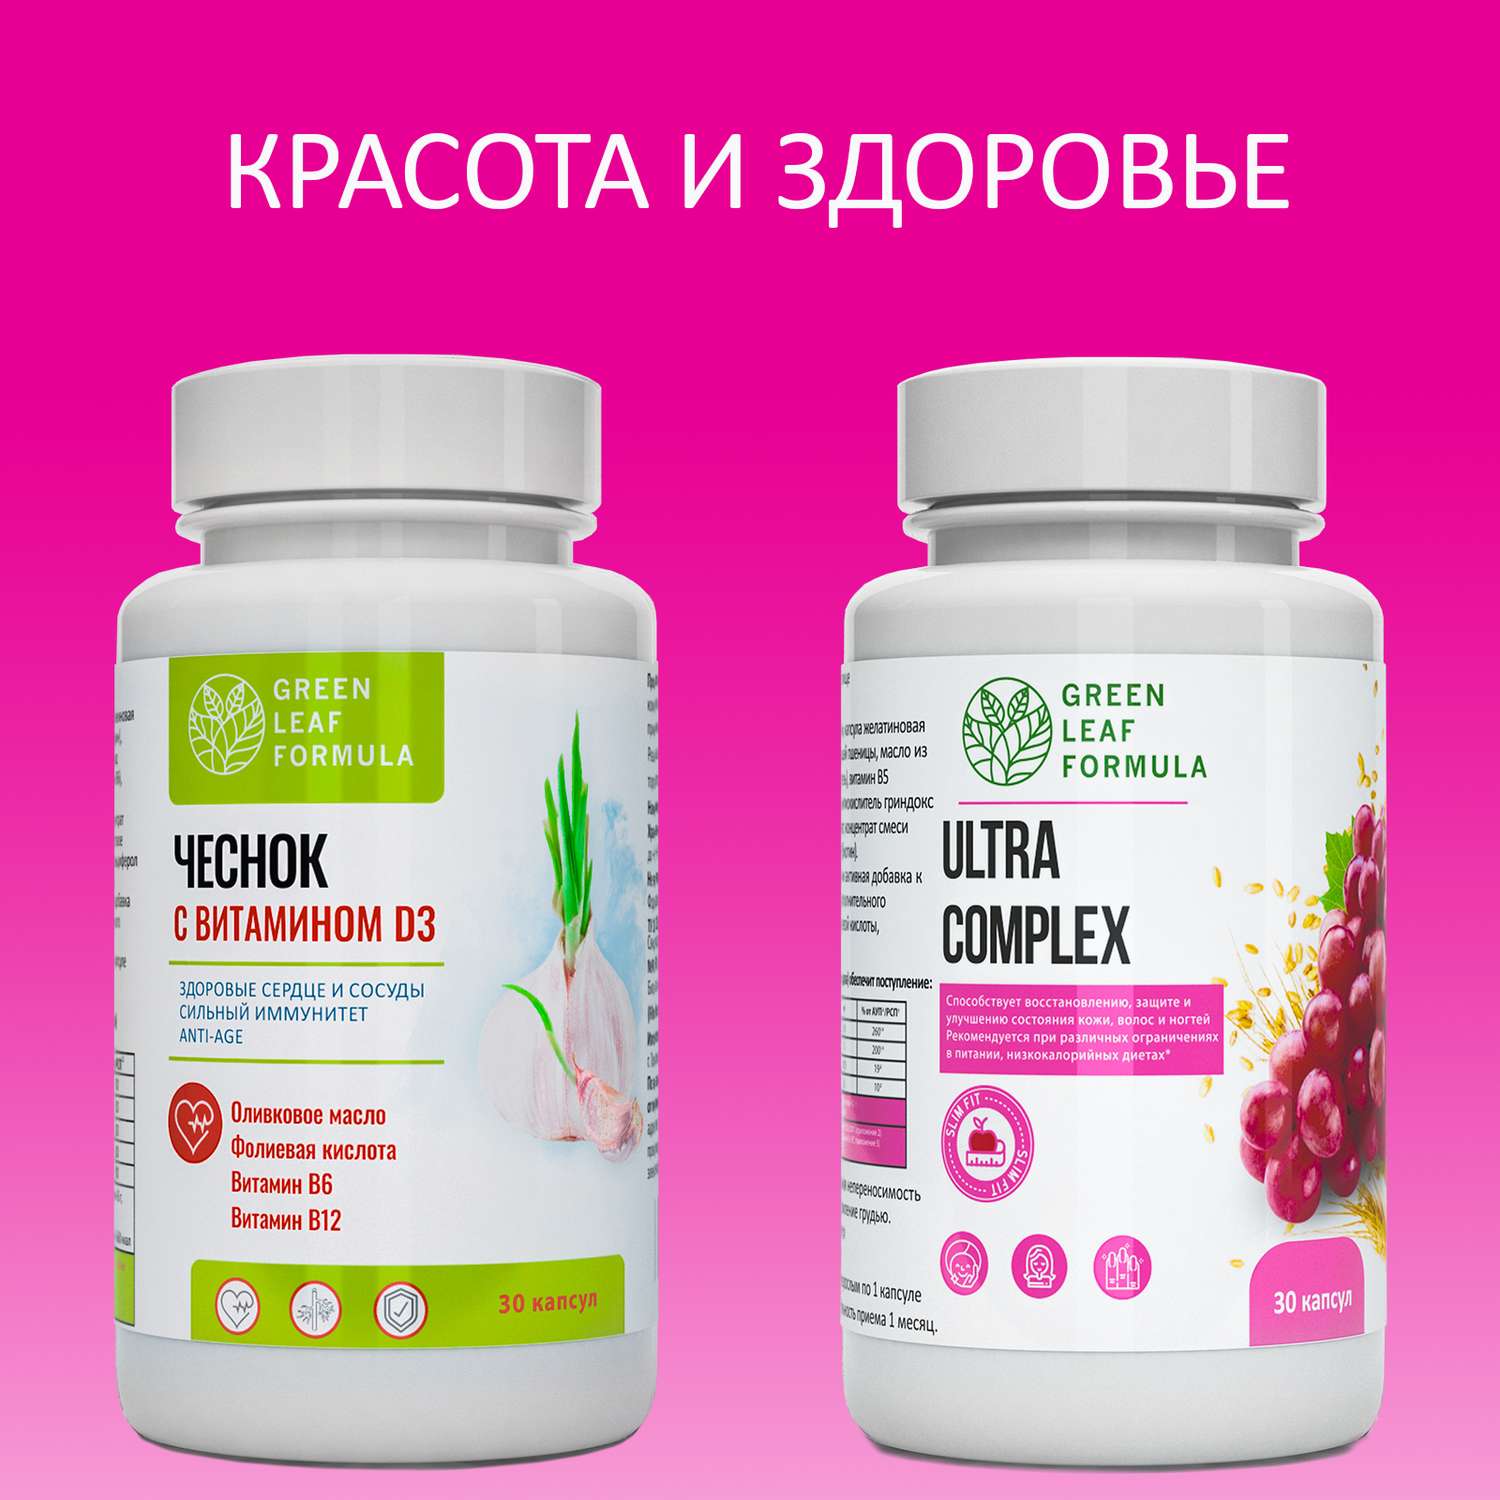 Набор Green Leaf Formula Экстракт чеснока и Витамины для женщин 60 капсул - фото 2